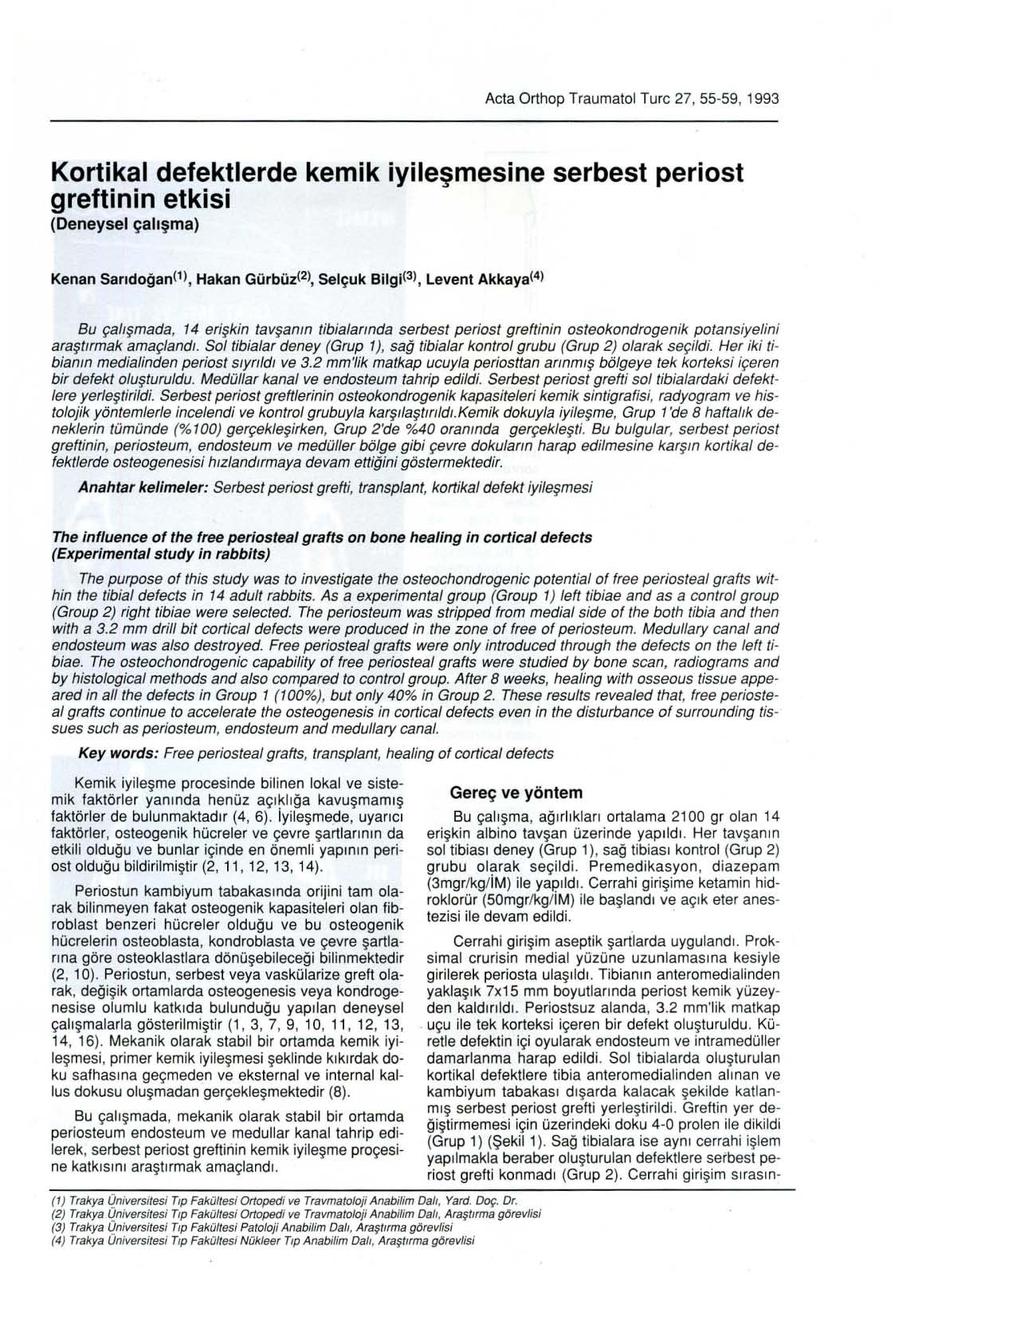 Acta Orthop Traumatol Turc 27, 55-59, 1993 Kortikal defektierde kemik iyileşmesine serbest periost greftinin etkisi (Deneysel çalışma) Kenan Sarıdoğan(1), Hakan Gürbüz(2), Selçuk Bilgi(3), Levent